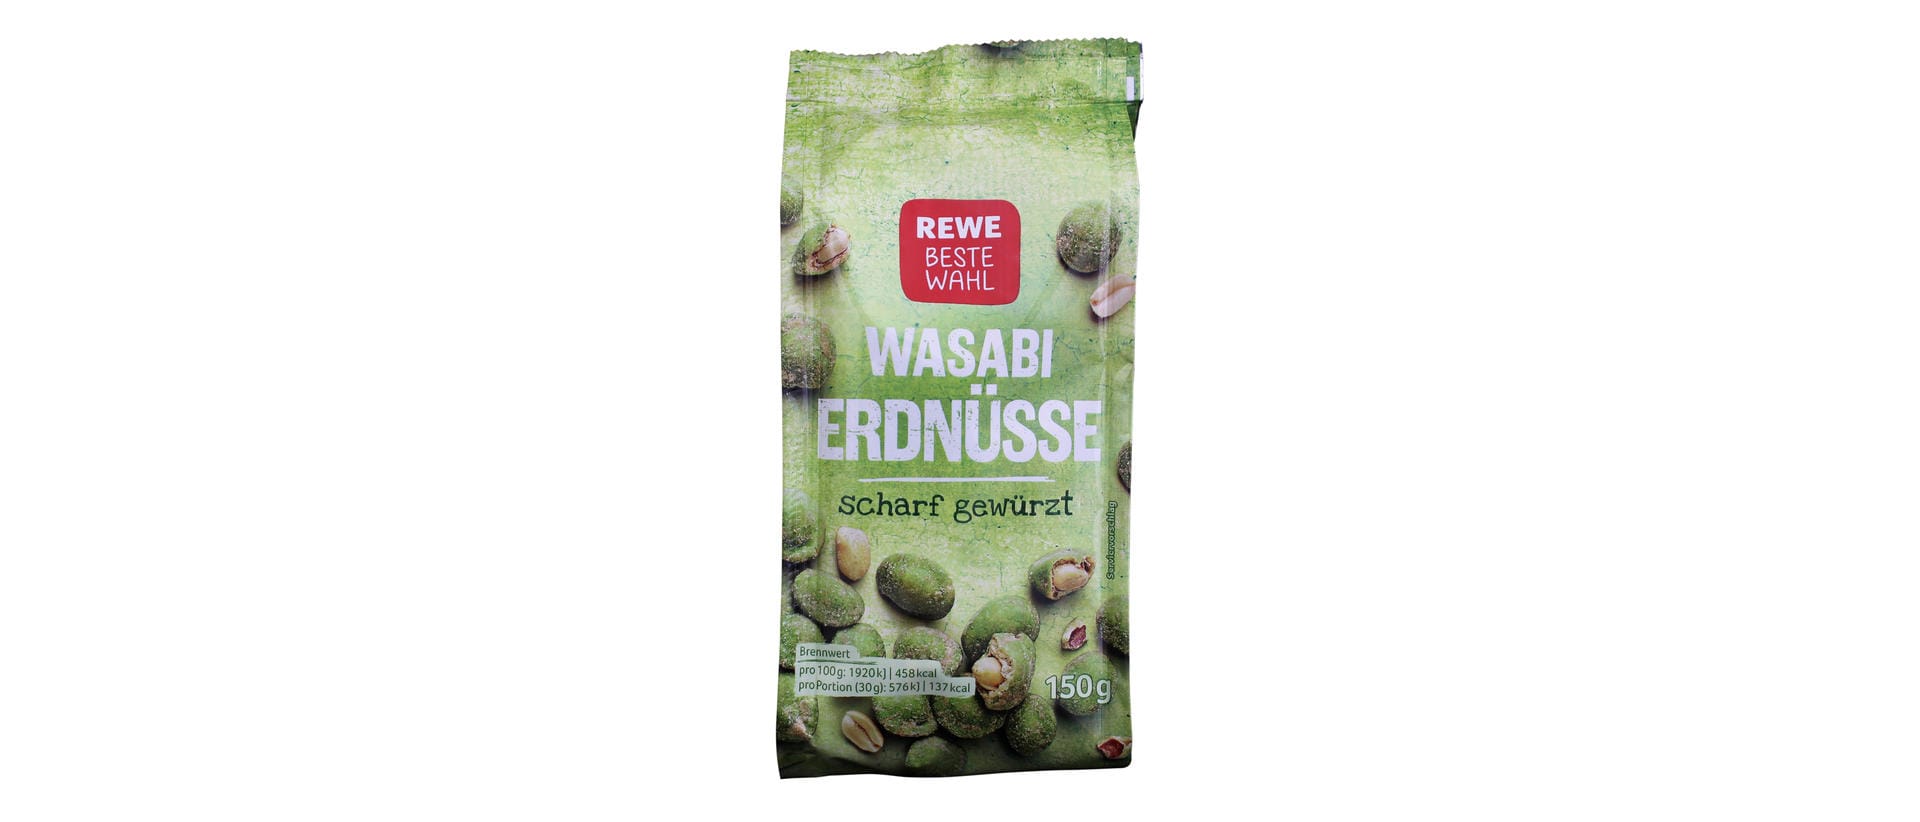 Laut Foodwatch enthalten die Wasabi-Erdnüsse von Rewe gerade einmal 0,003 Prozent des Gewürzes. Offenbar wurde hier mit Aroma und Farbstoff nachgeholfen, um die gewünschte Farbe und Schärfe zu erhalten.